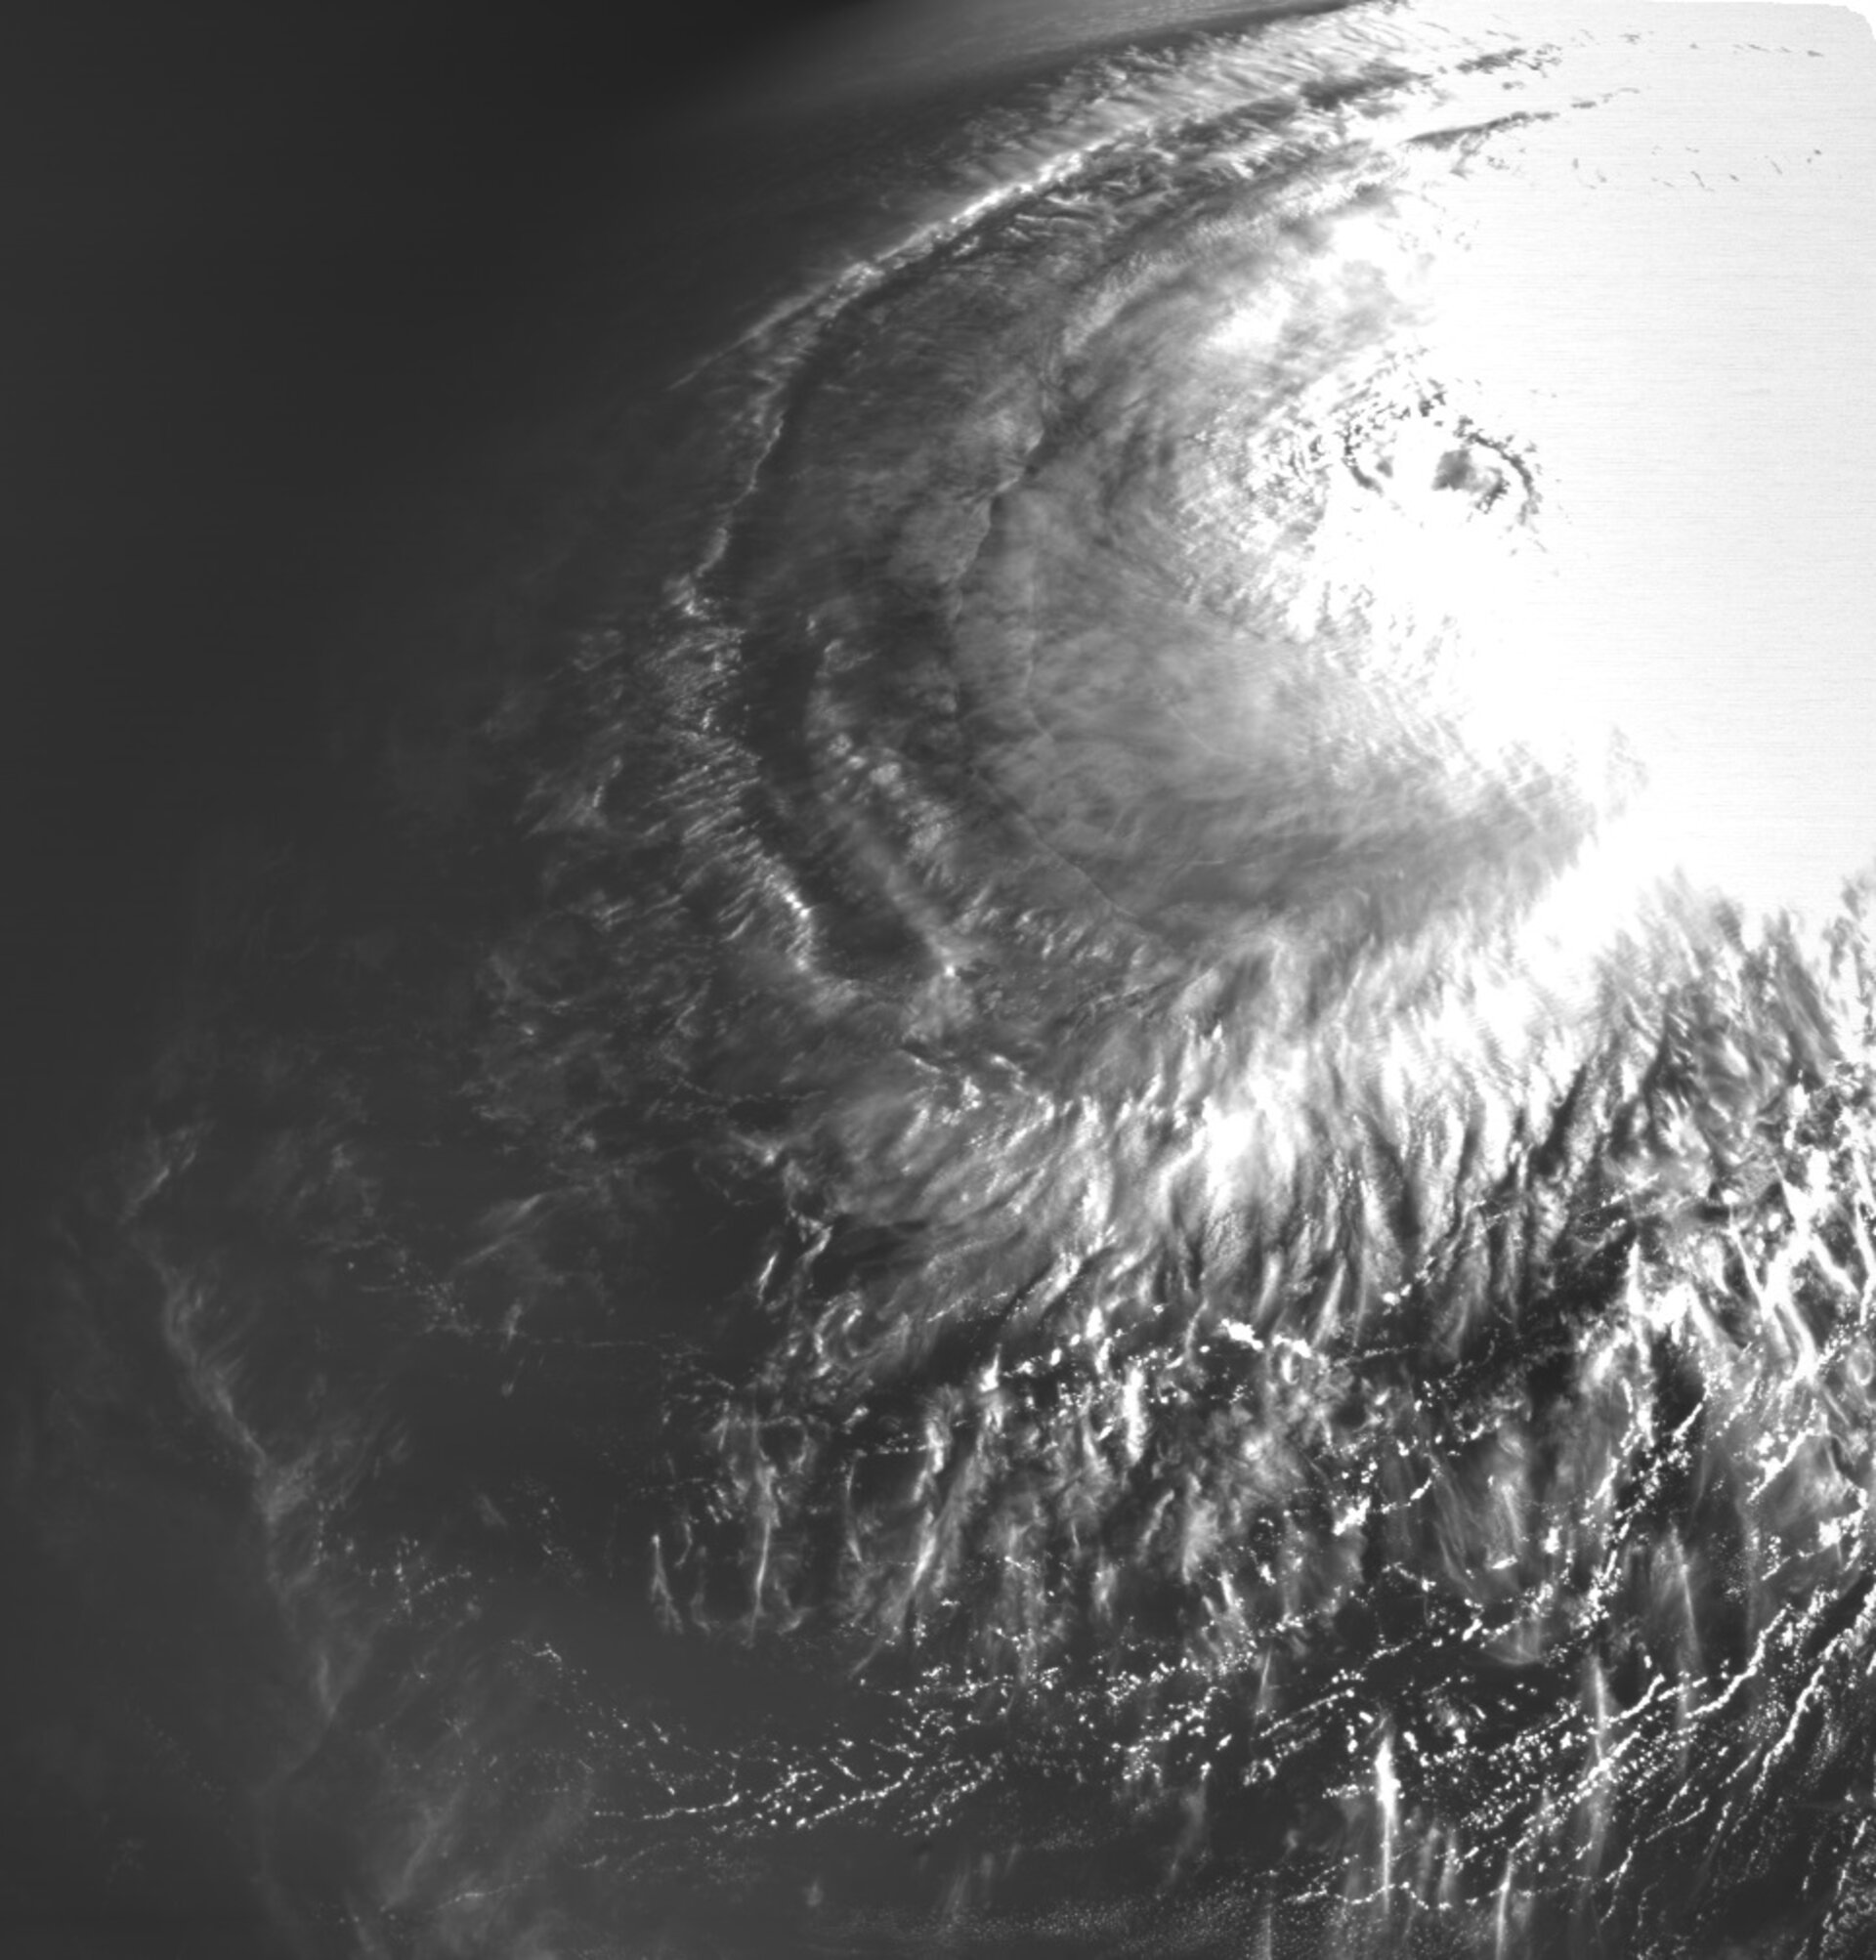 Tajfun Maysak viděný kamerou družice Proba-2